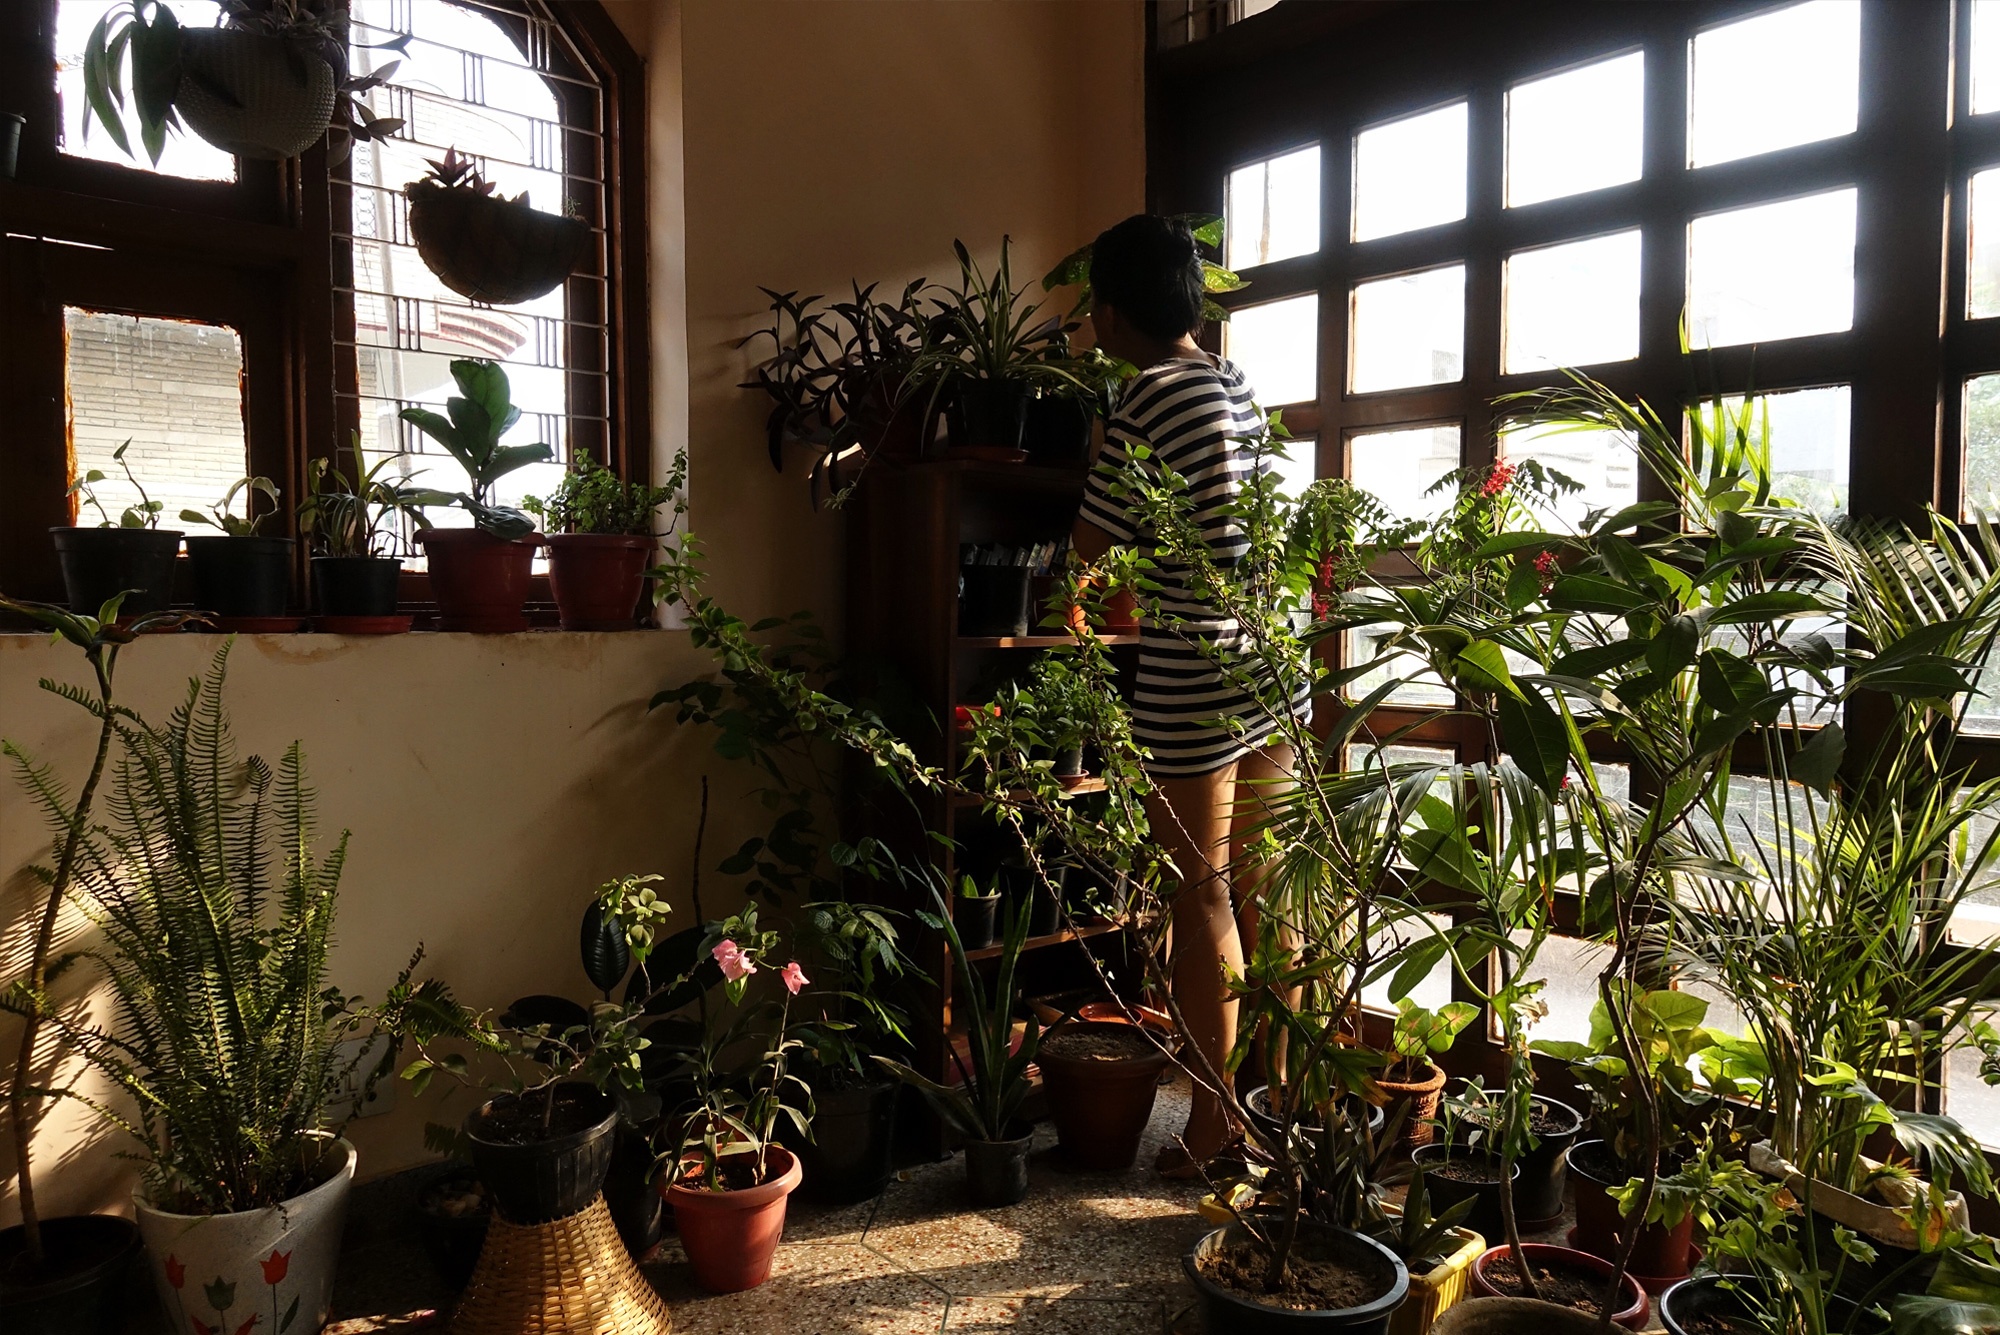 I Brought Home a New Plant: Menty, New Delhi